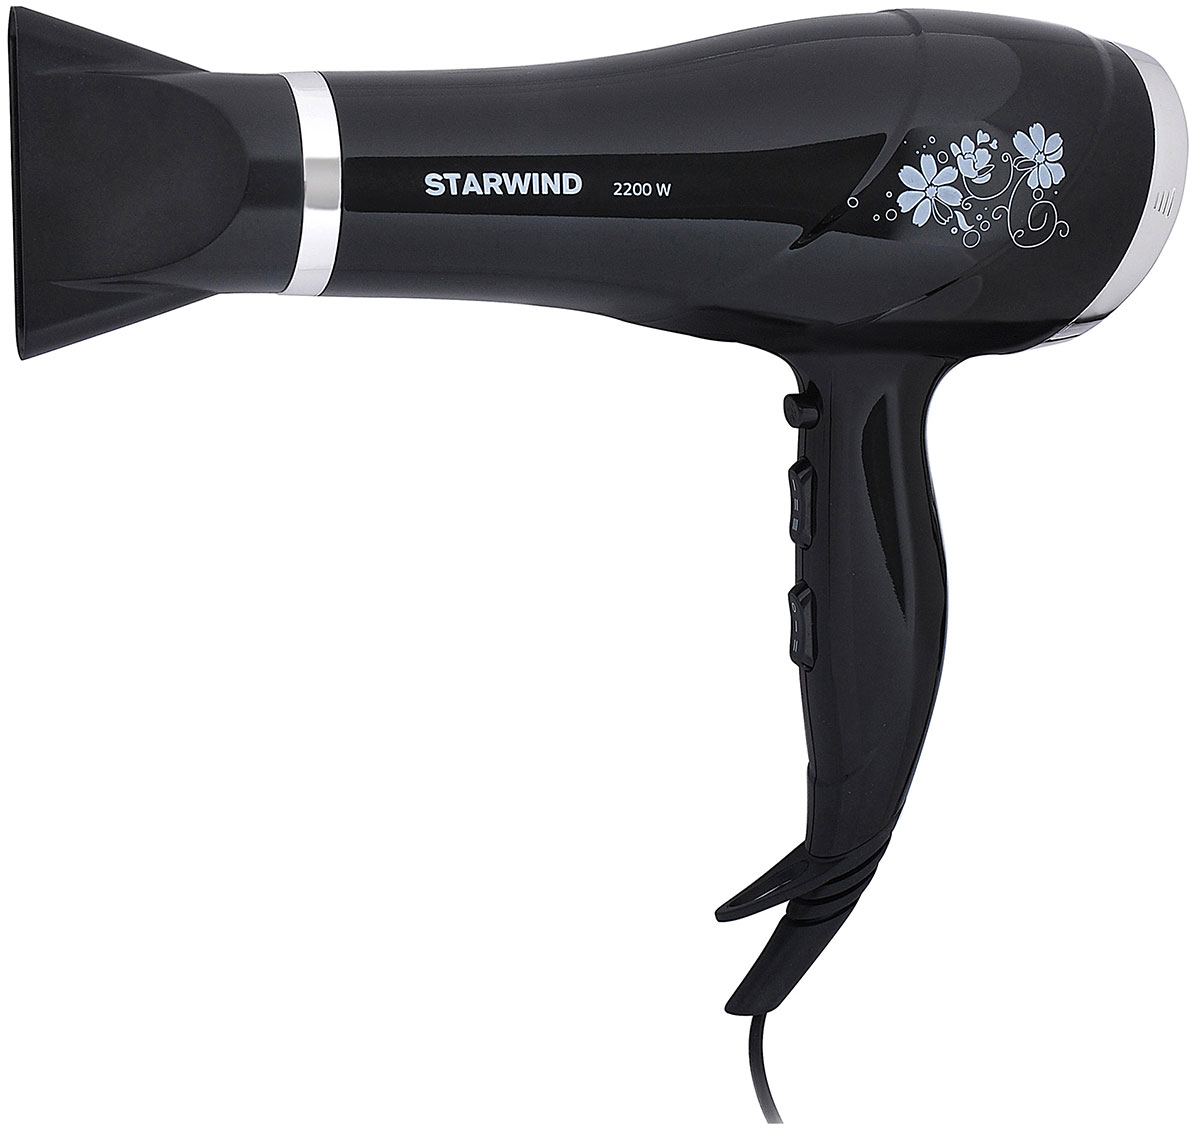 Фен Starwind SHP5816 2200Вт черный фен starwind shp5816 2200вт черный